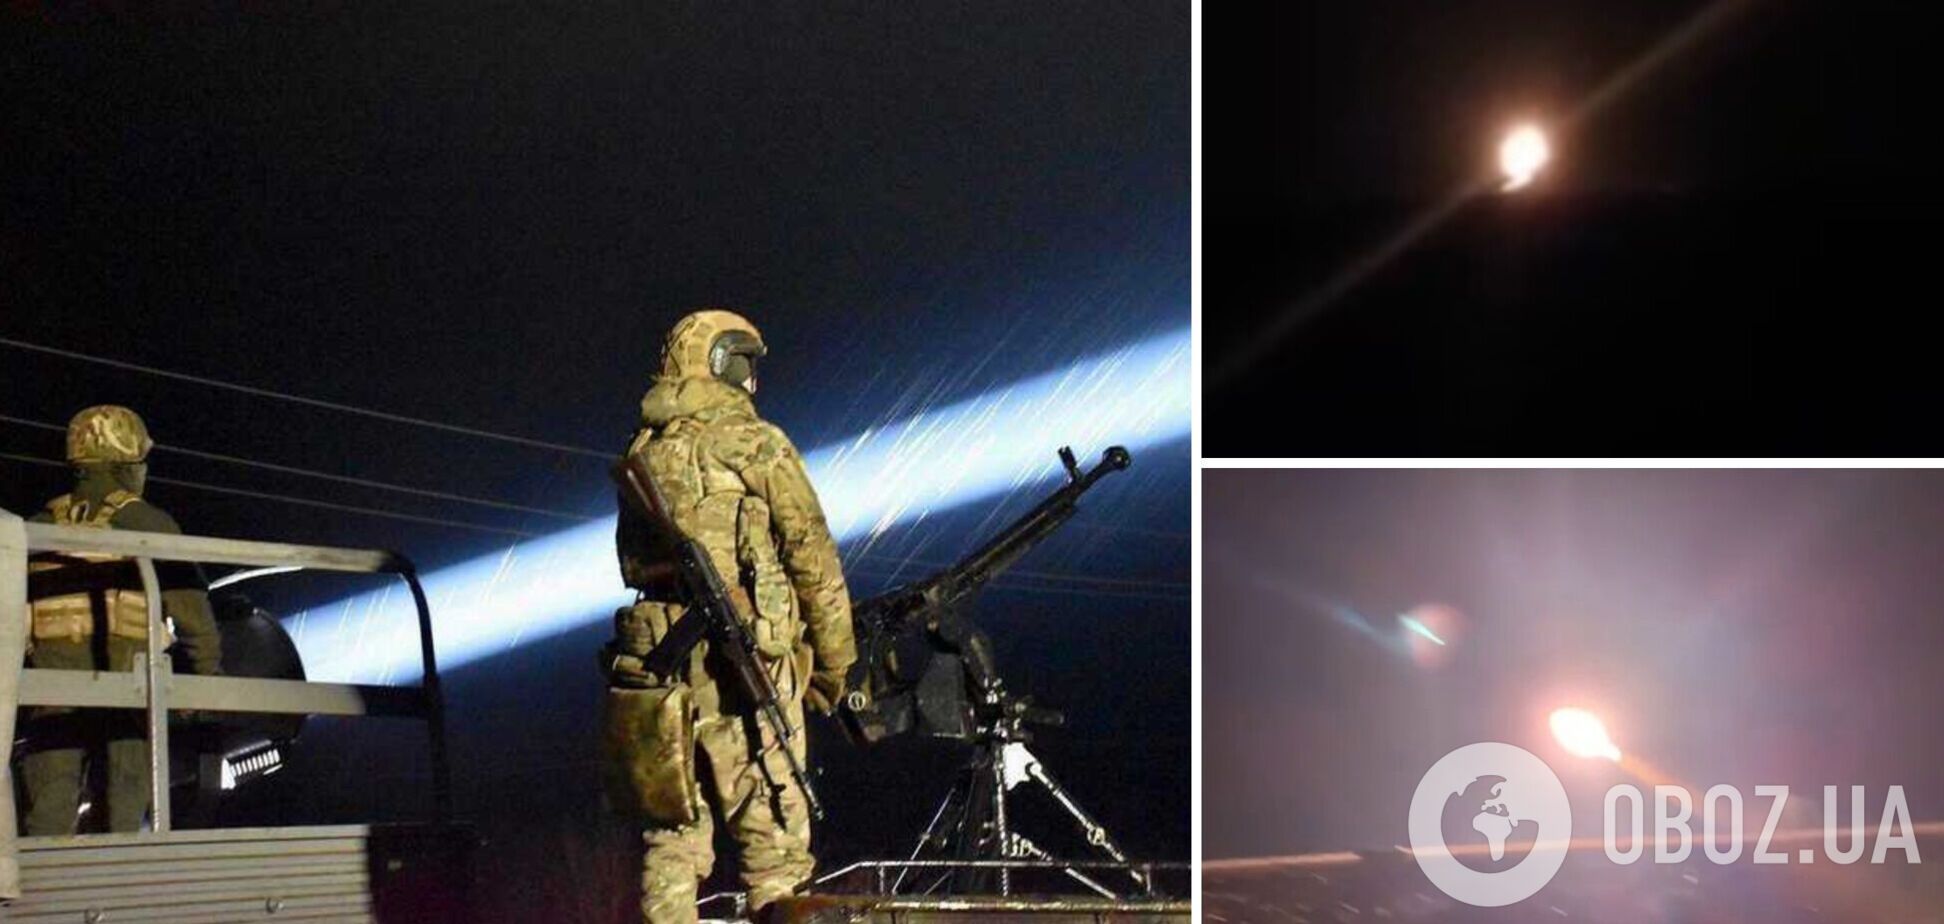 Точно в цель: в Воздушных силах показали ночную охоту на иранские дроны. Видео